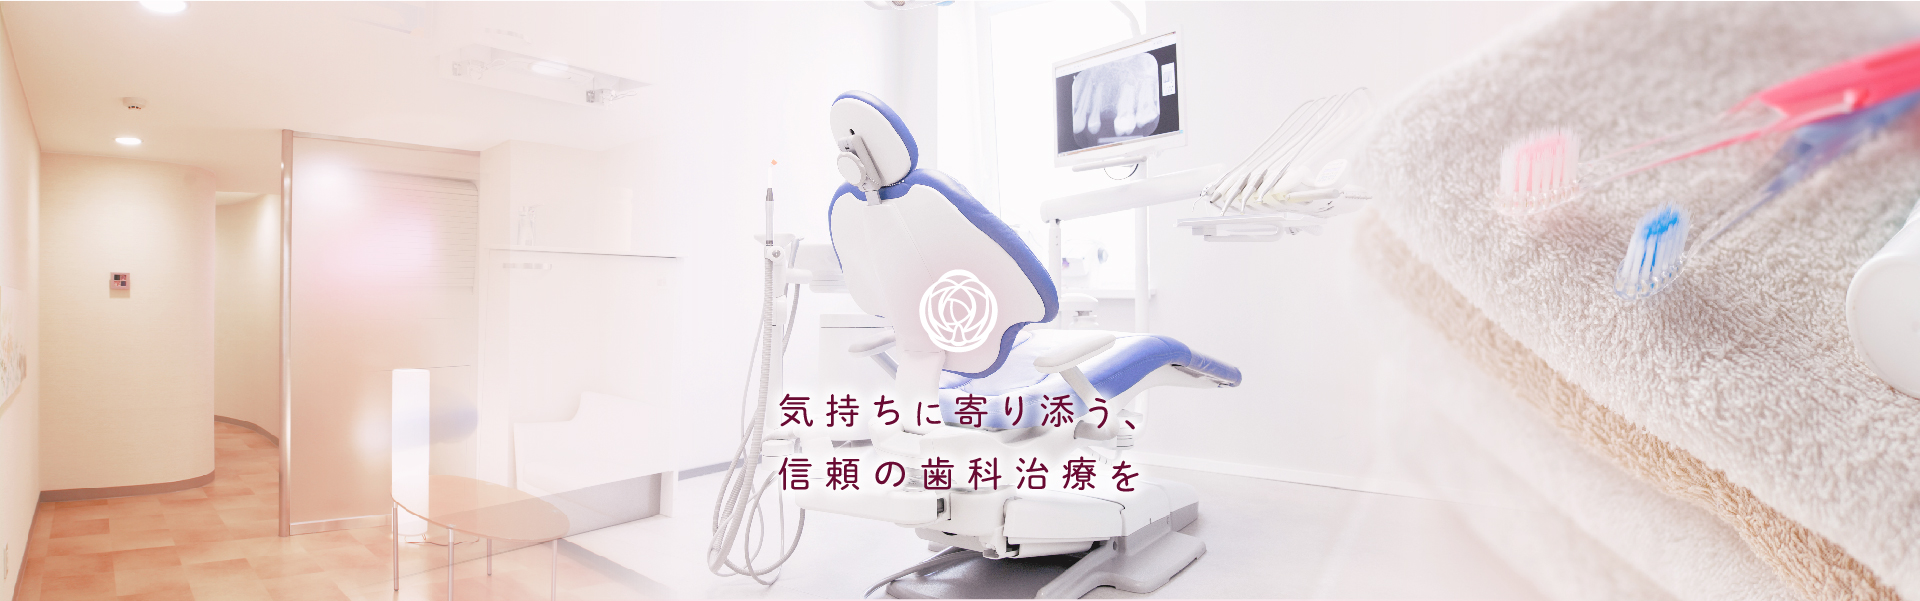 江戸川台・かわい歯科クリニック